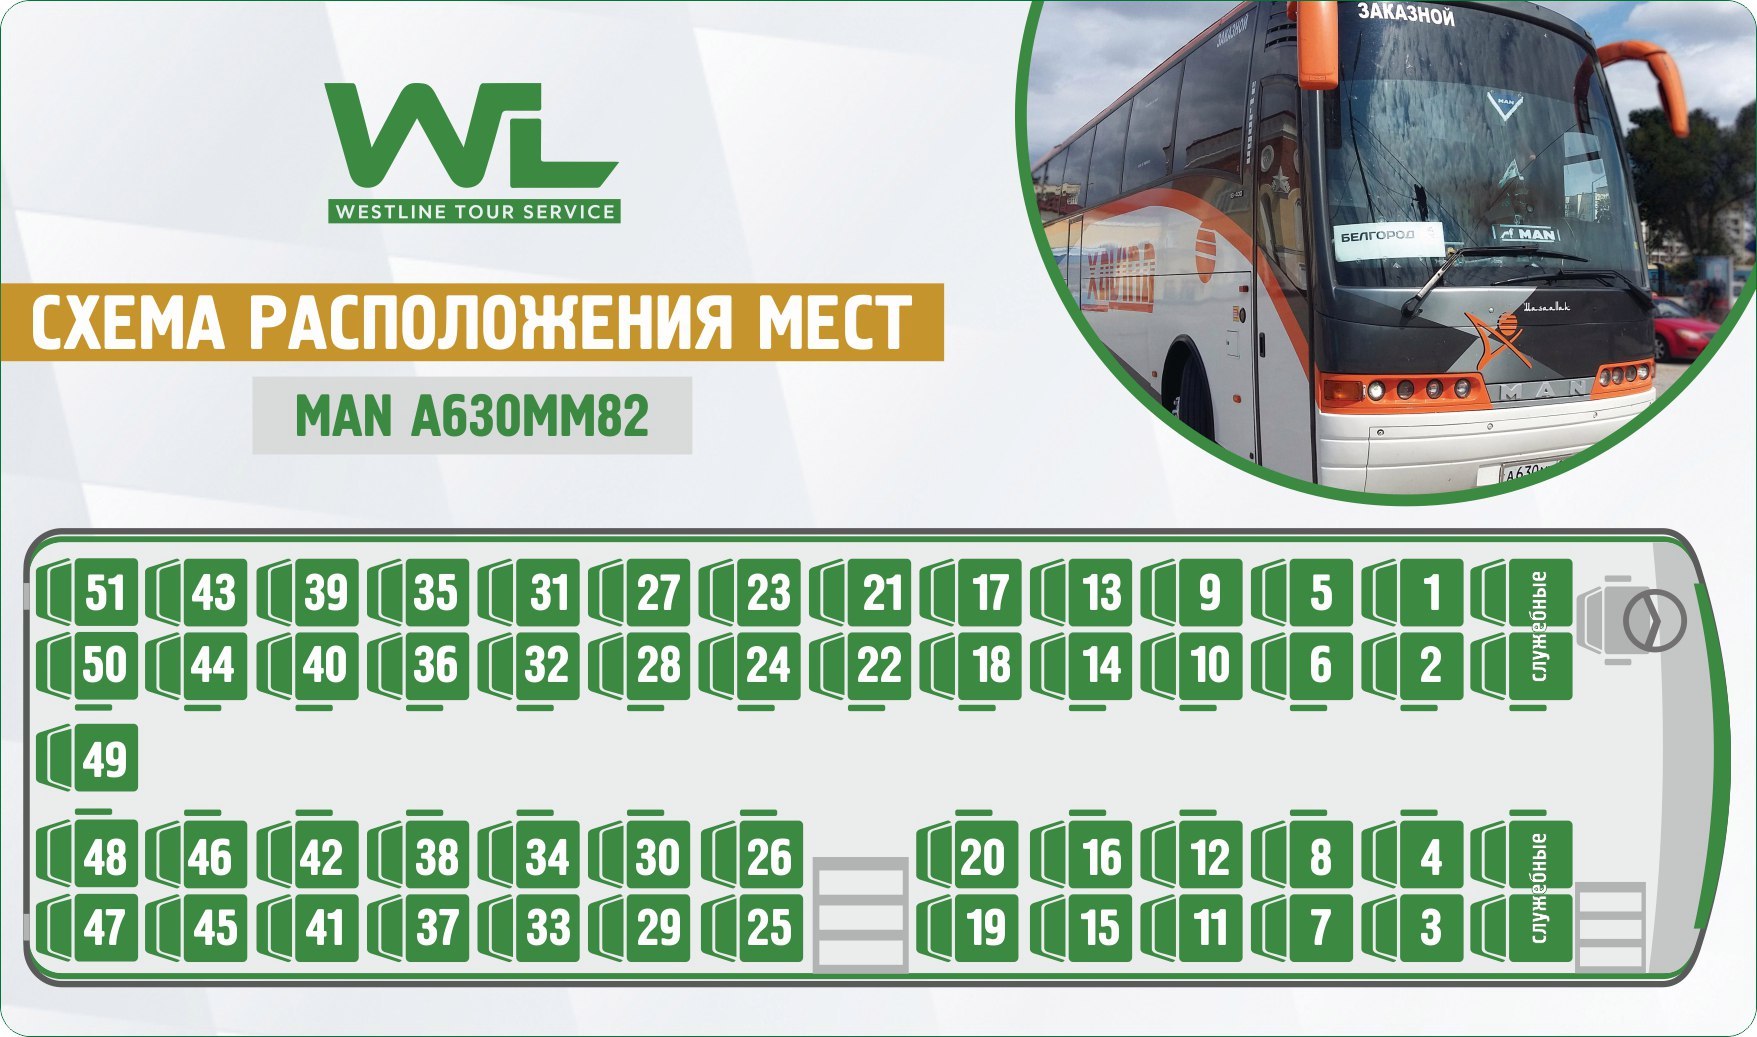 Москва расположение автобусов